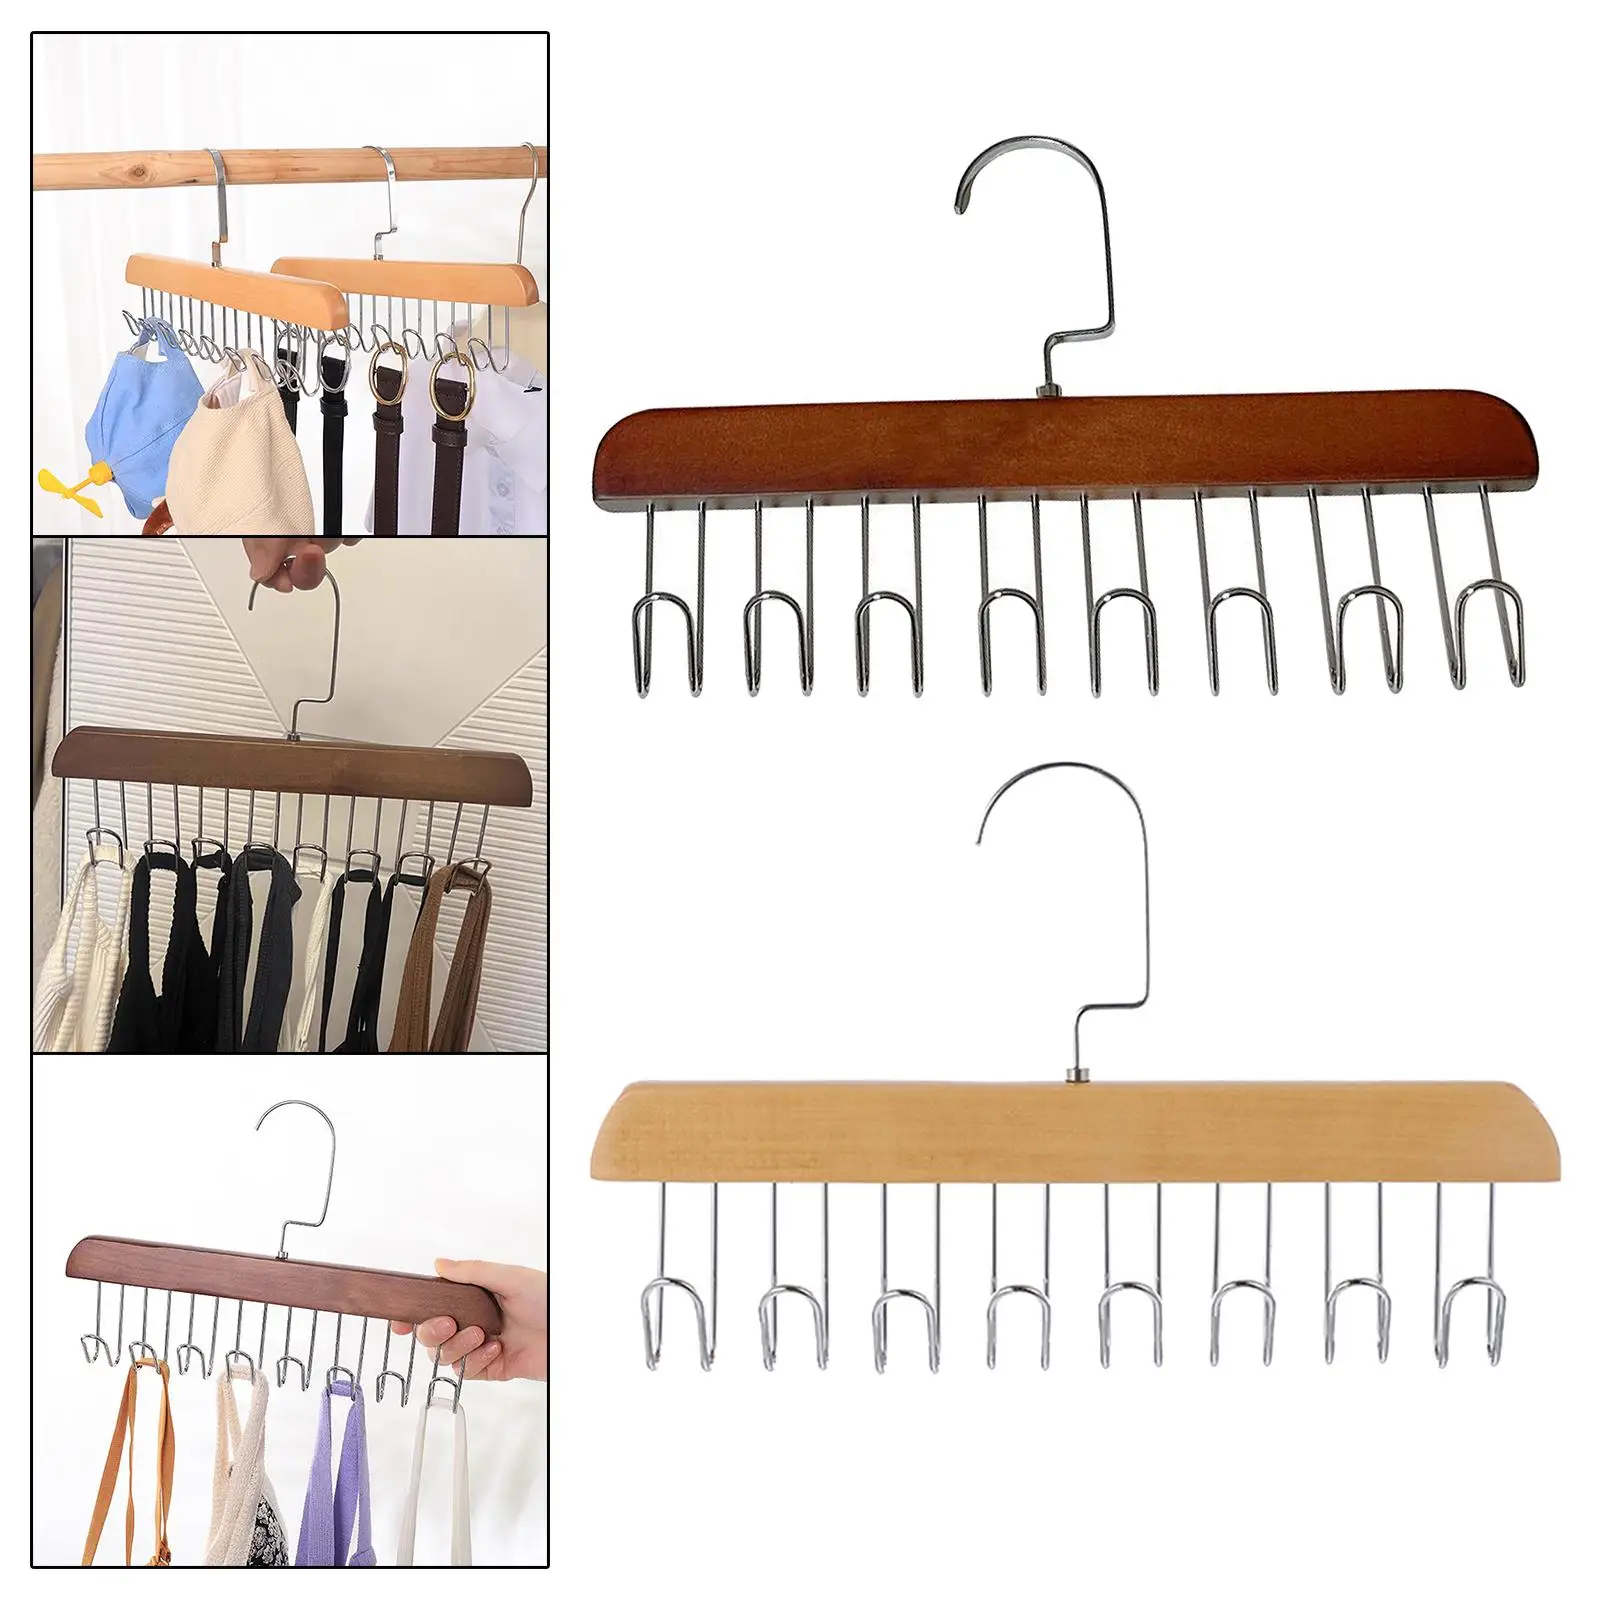 Wooden Tie Rack Accessories Space Saving Durable Belt Hanger Hanging Organizer Hook for Tank Tops Scarves Belts Hats Men Women